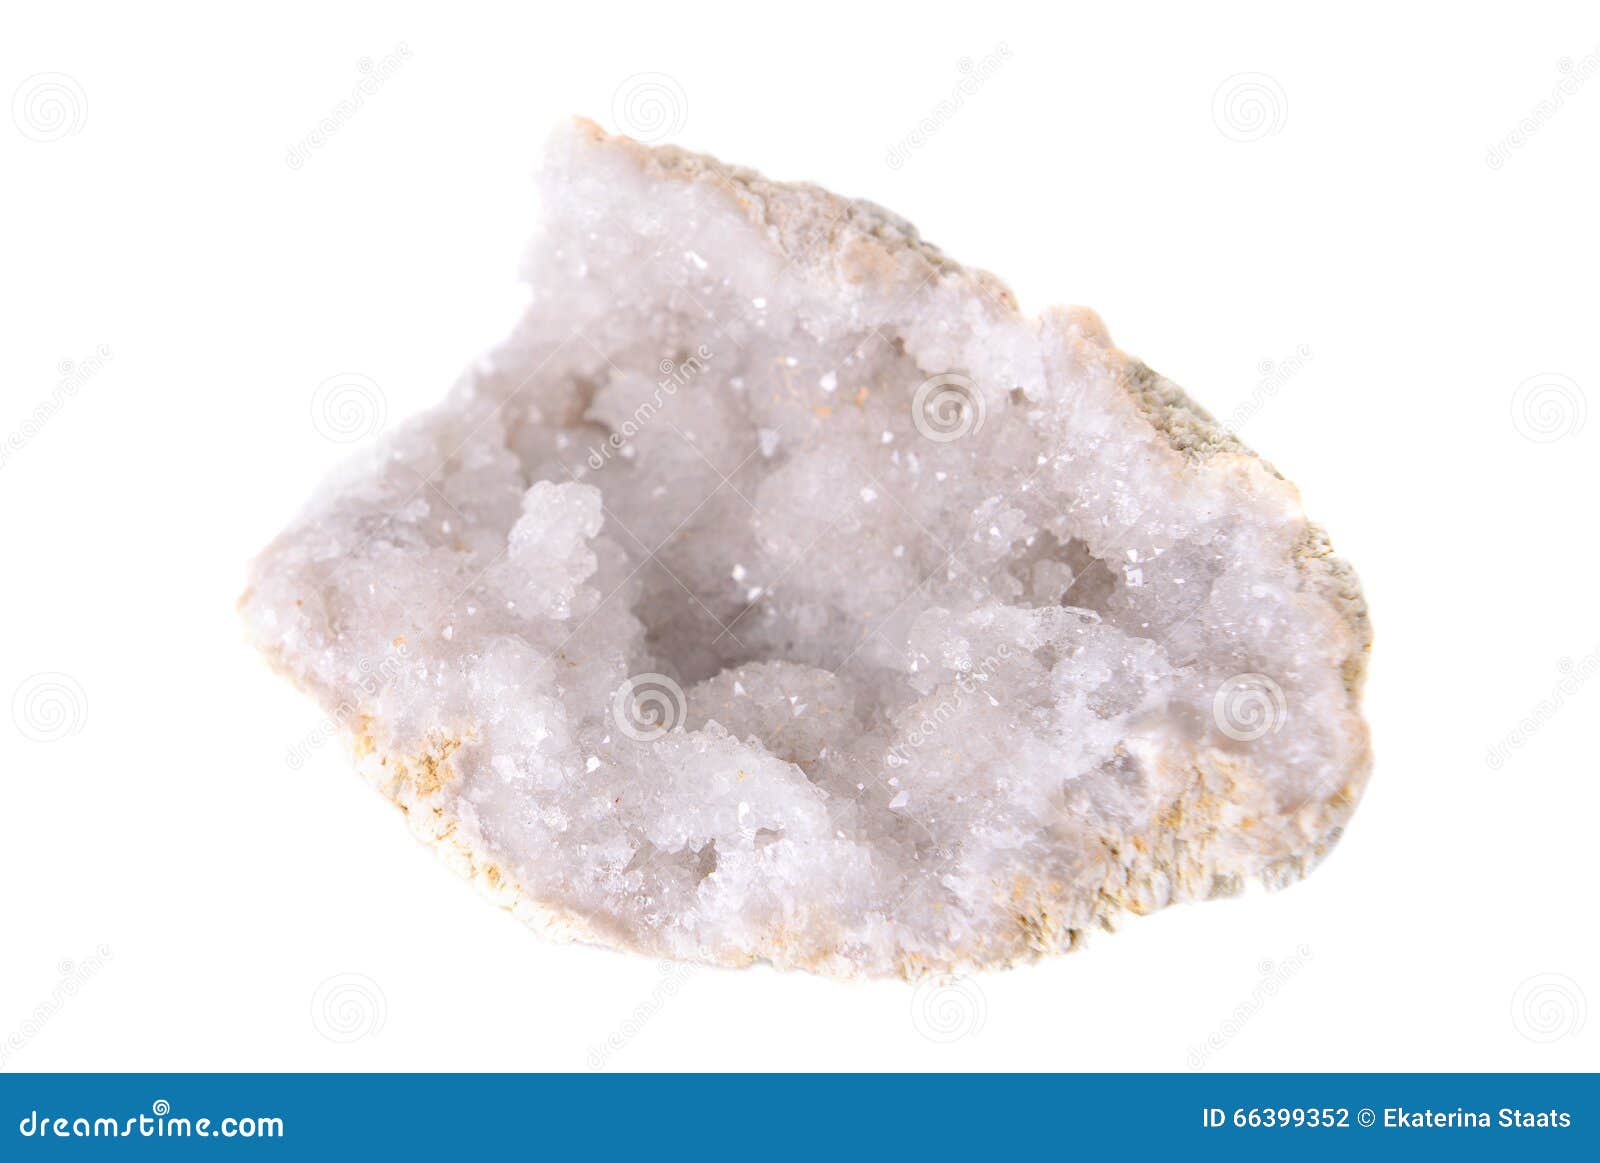 halite crystal minerale